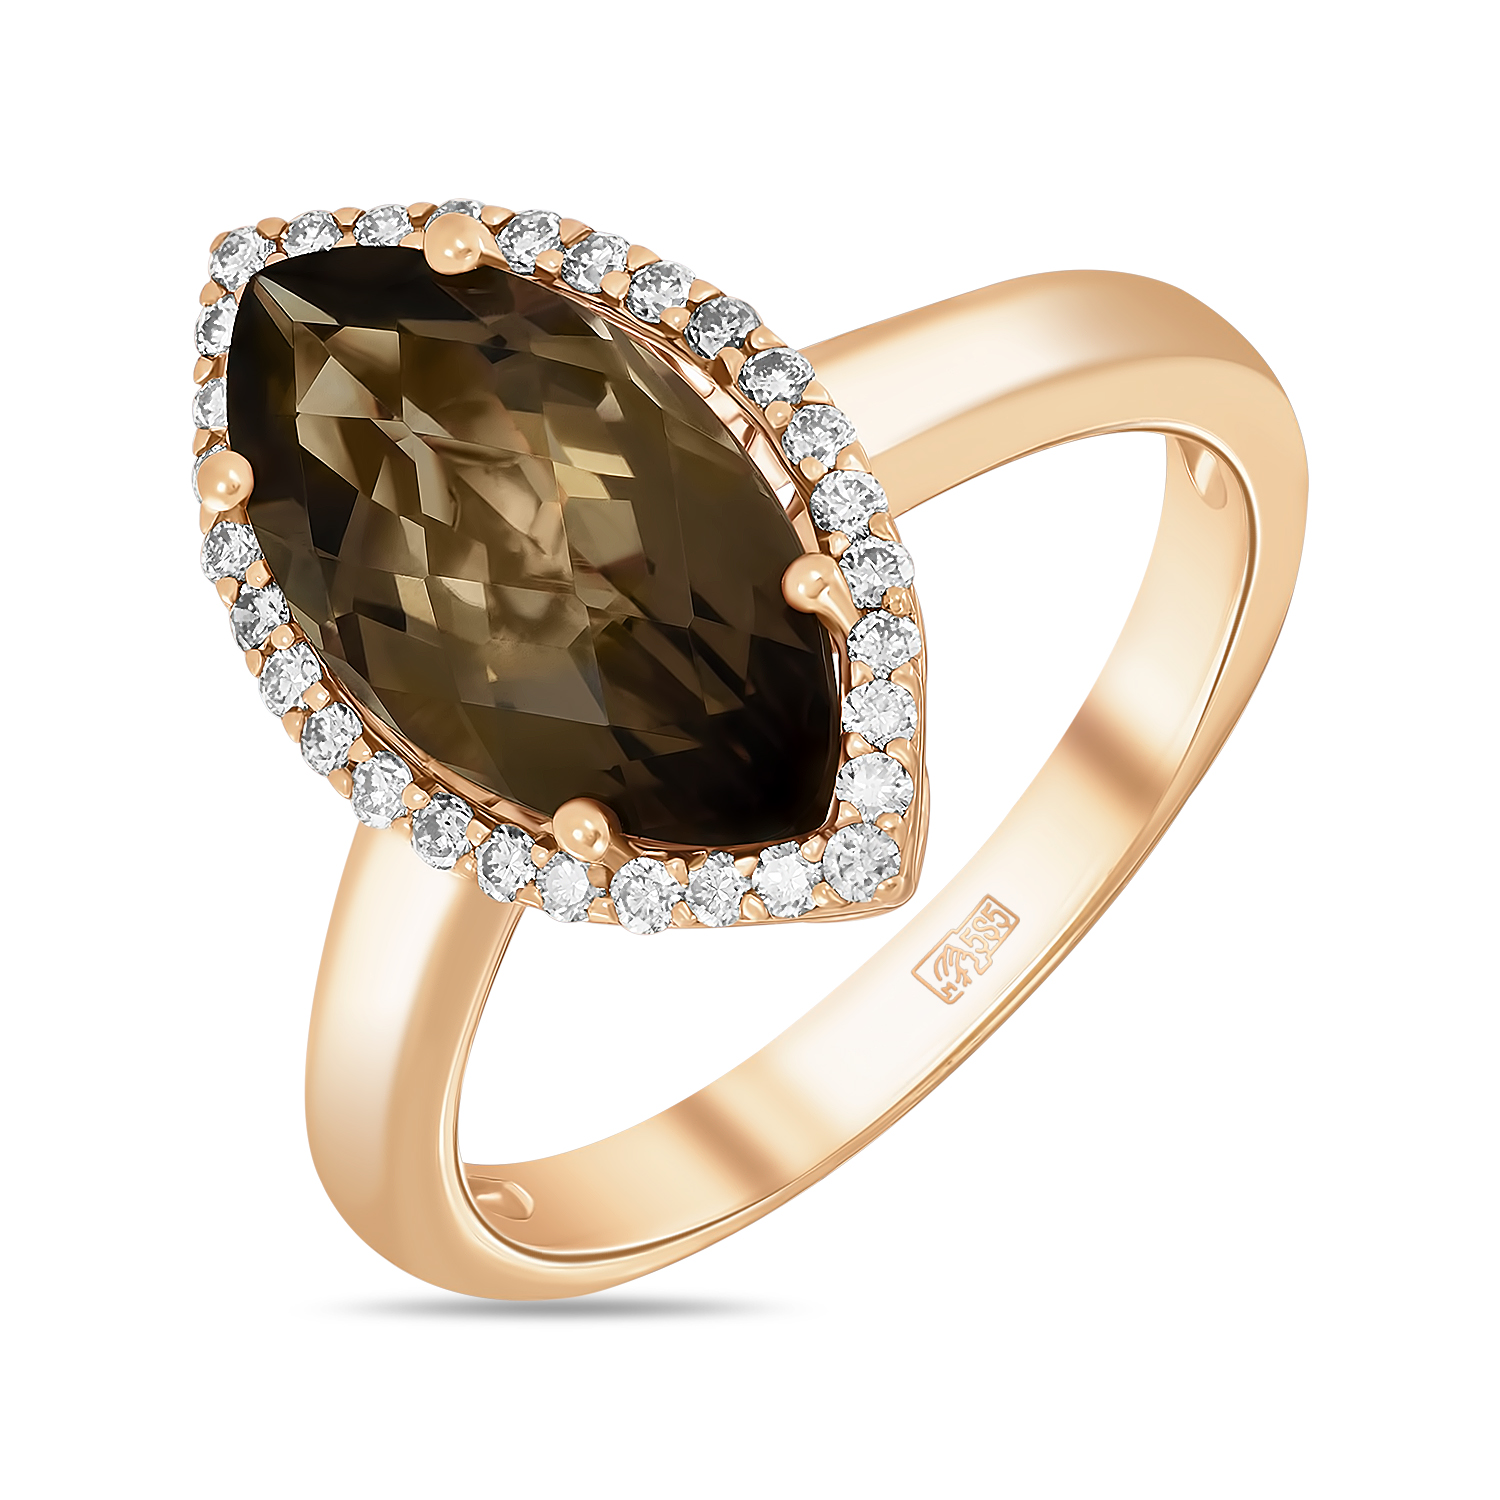 Кольца МЮЗ Золотое кольцо с бриллиантами и кварцем miuz ru золотое кольцо c бриллиантами перидотом и кварцем